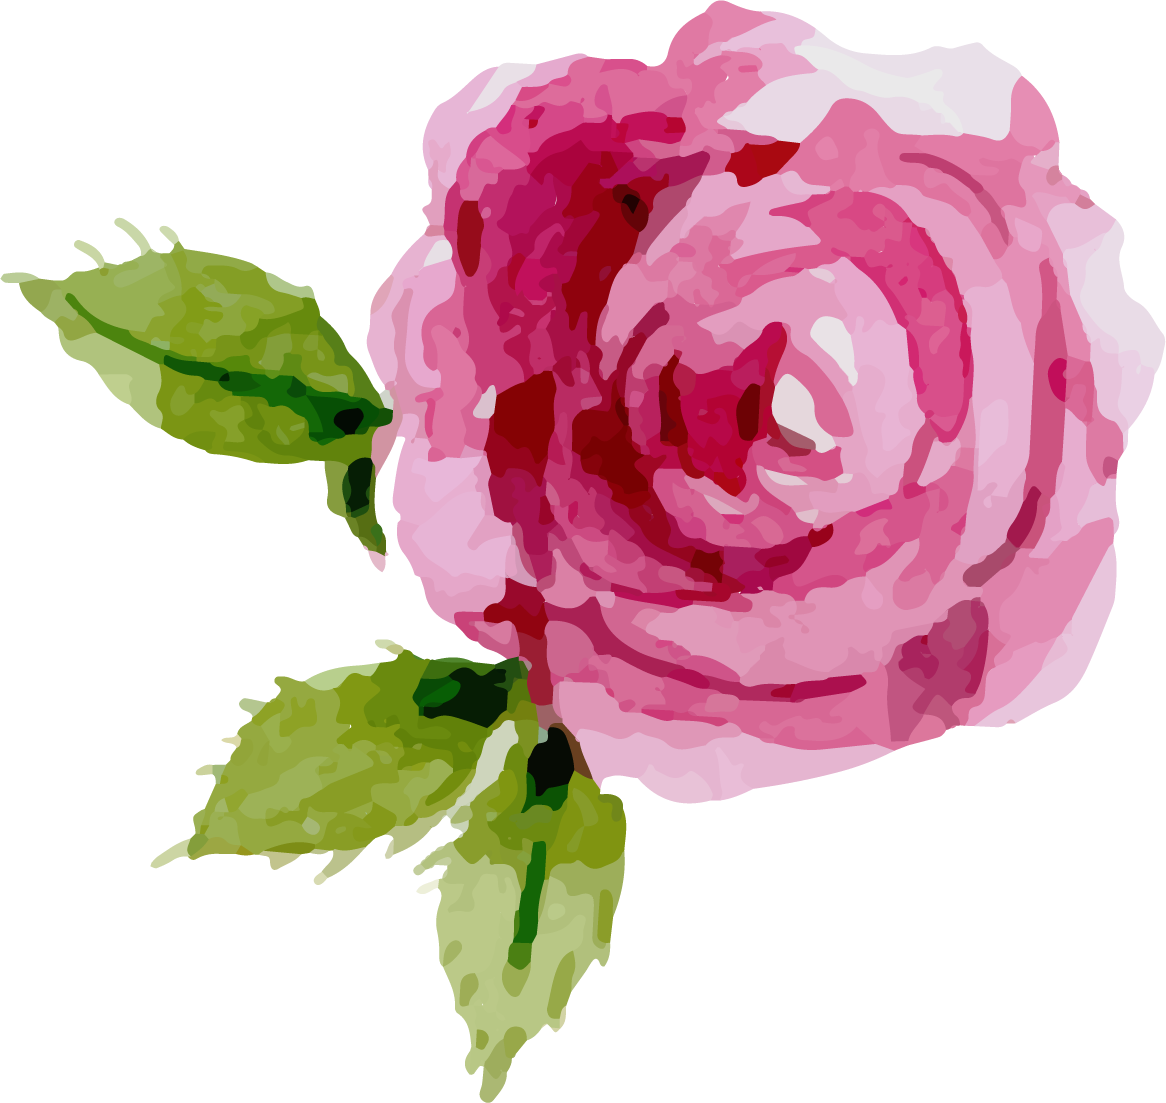 Rose Png Clipart Image 04 - Wunderliche Rosen-blumenhochzeits-einladungskarte Karte (1166x1103)